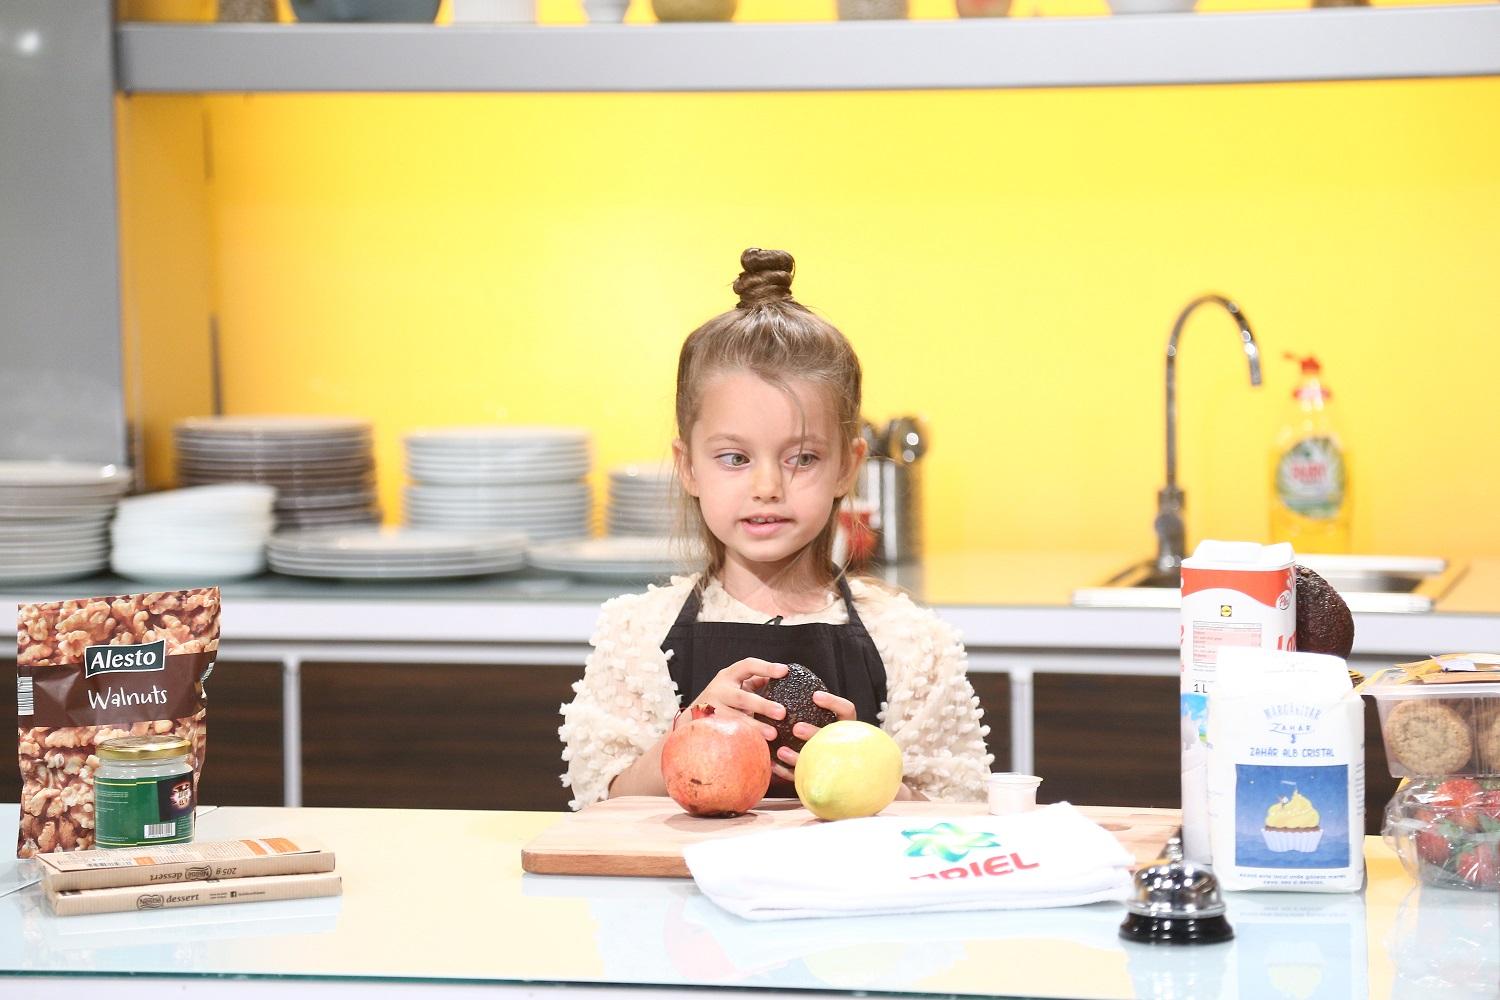 Anastasia în bucătarie, imbrăcată cu o bluză bej și un șorț negru, se pregătește să gătească, având pe masă fructe, făină și lapte.